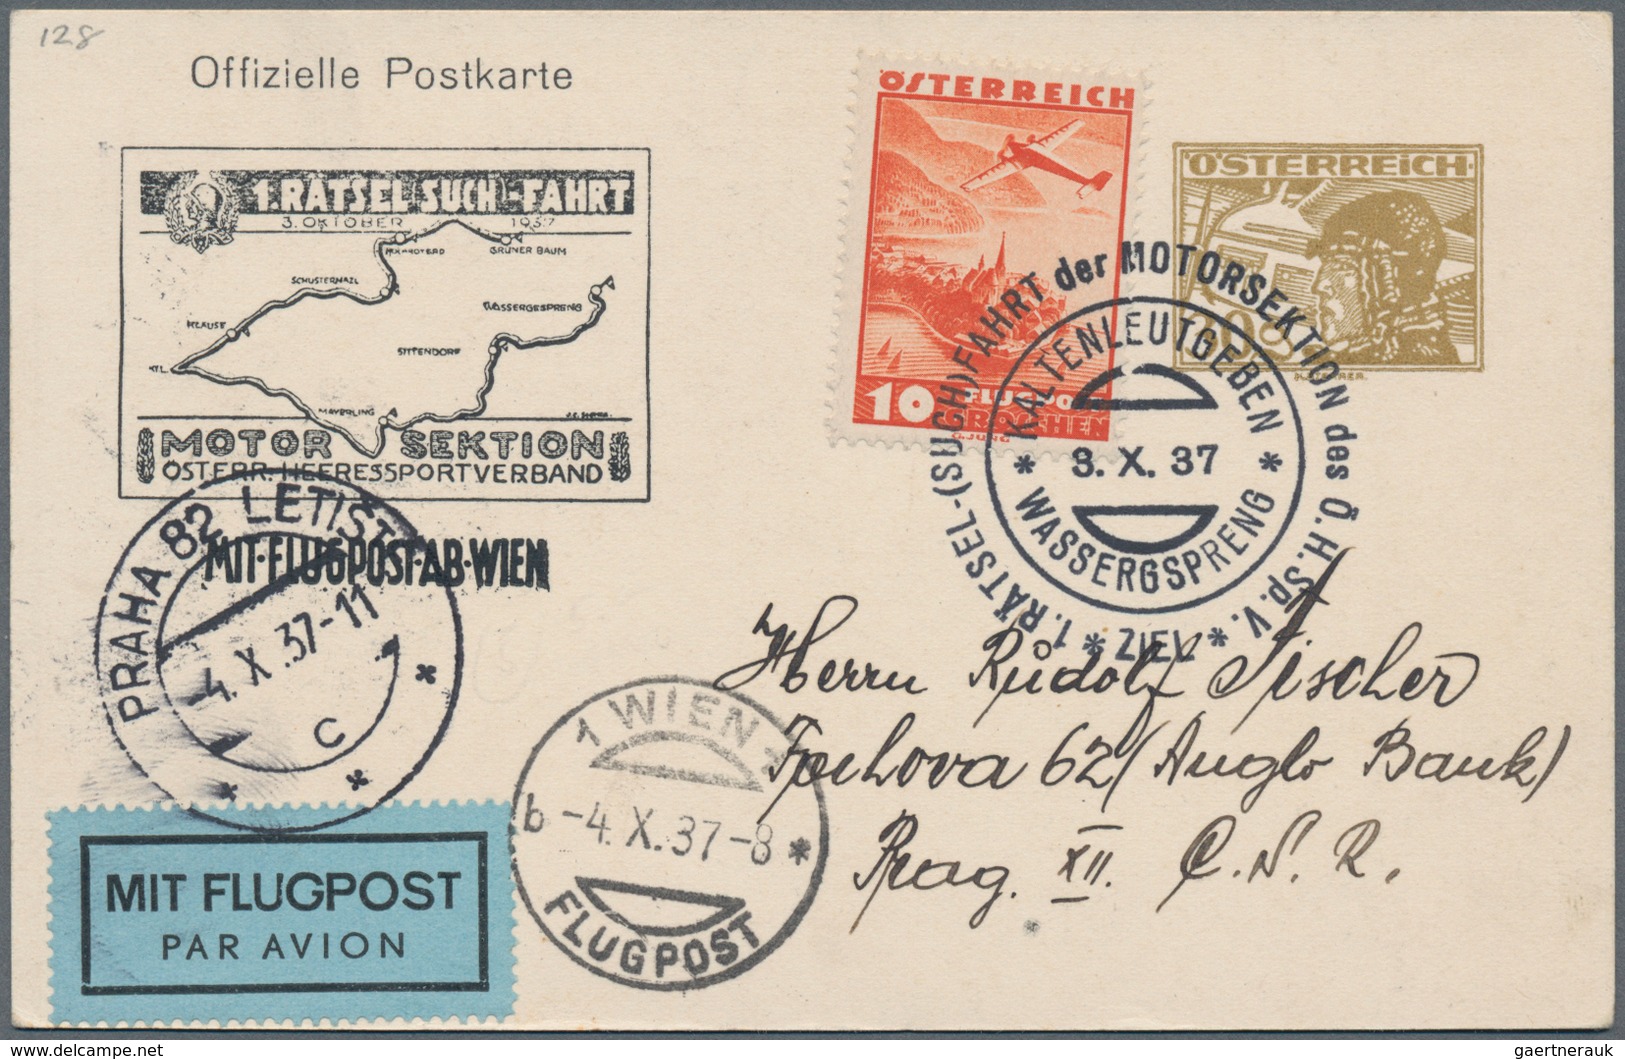 Österreich - Privatganzsachen: 1933/1937, fünf verschiedene Privat-Postkarten alle mit Wertstempel '